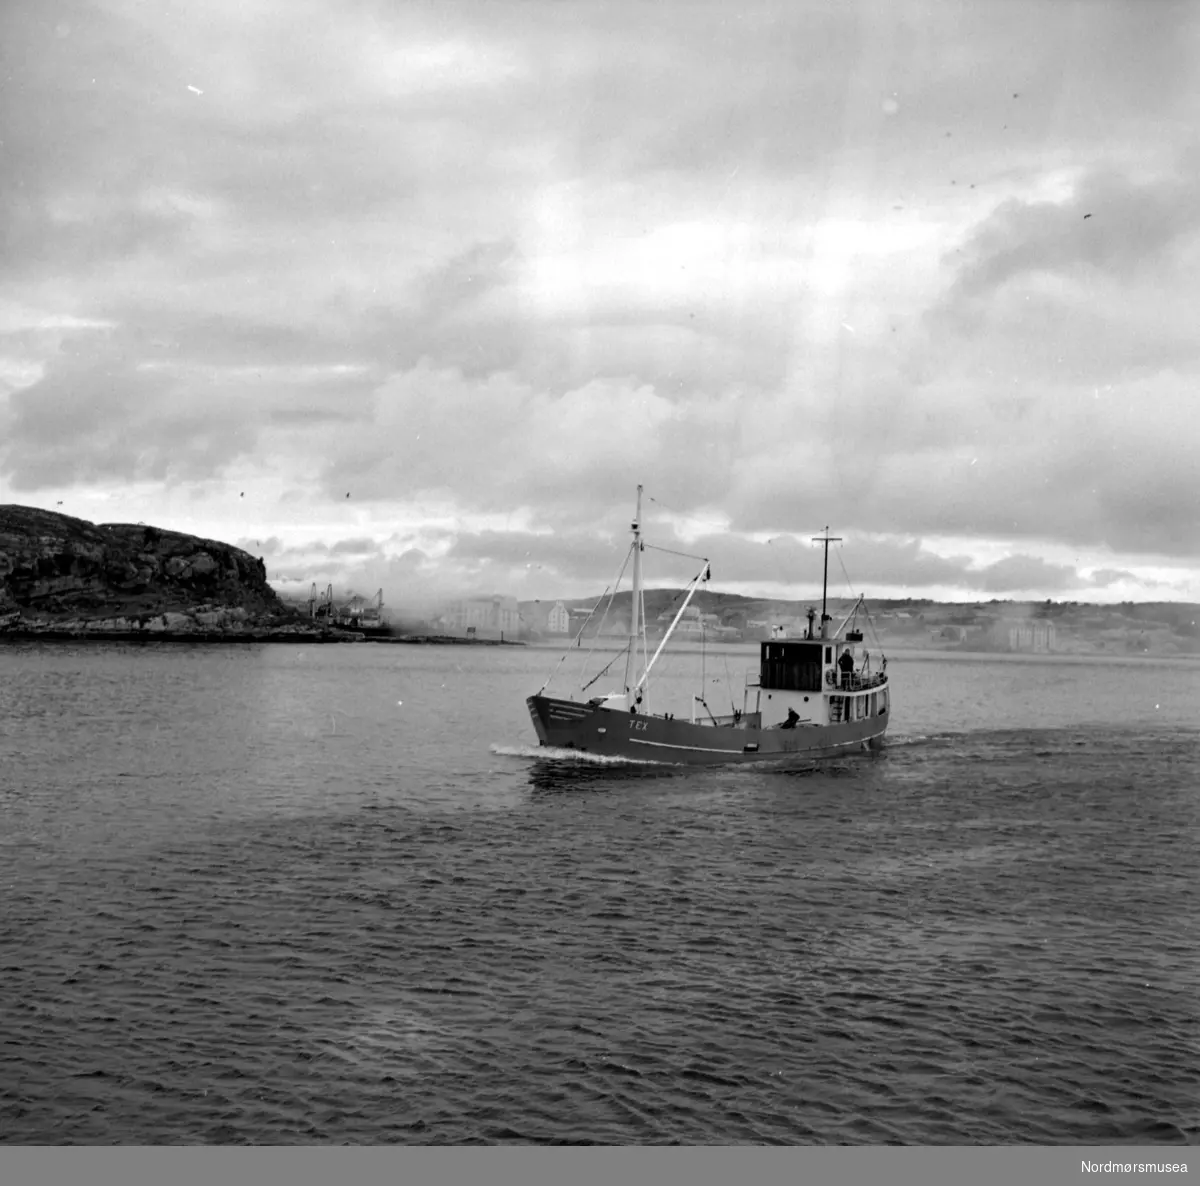 Brannbåten "Tex" i Kristiansund. Datering er trolig 1966. Fotograf er Nils Williams. Fra Nordmøre museums fotosamlinger